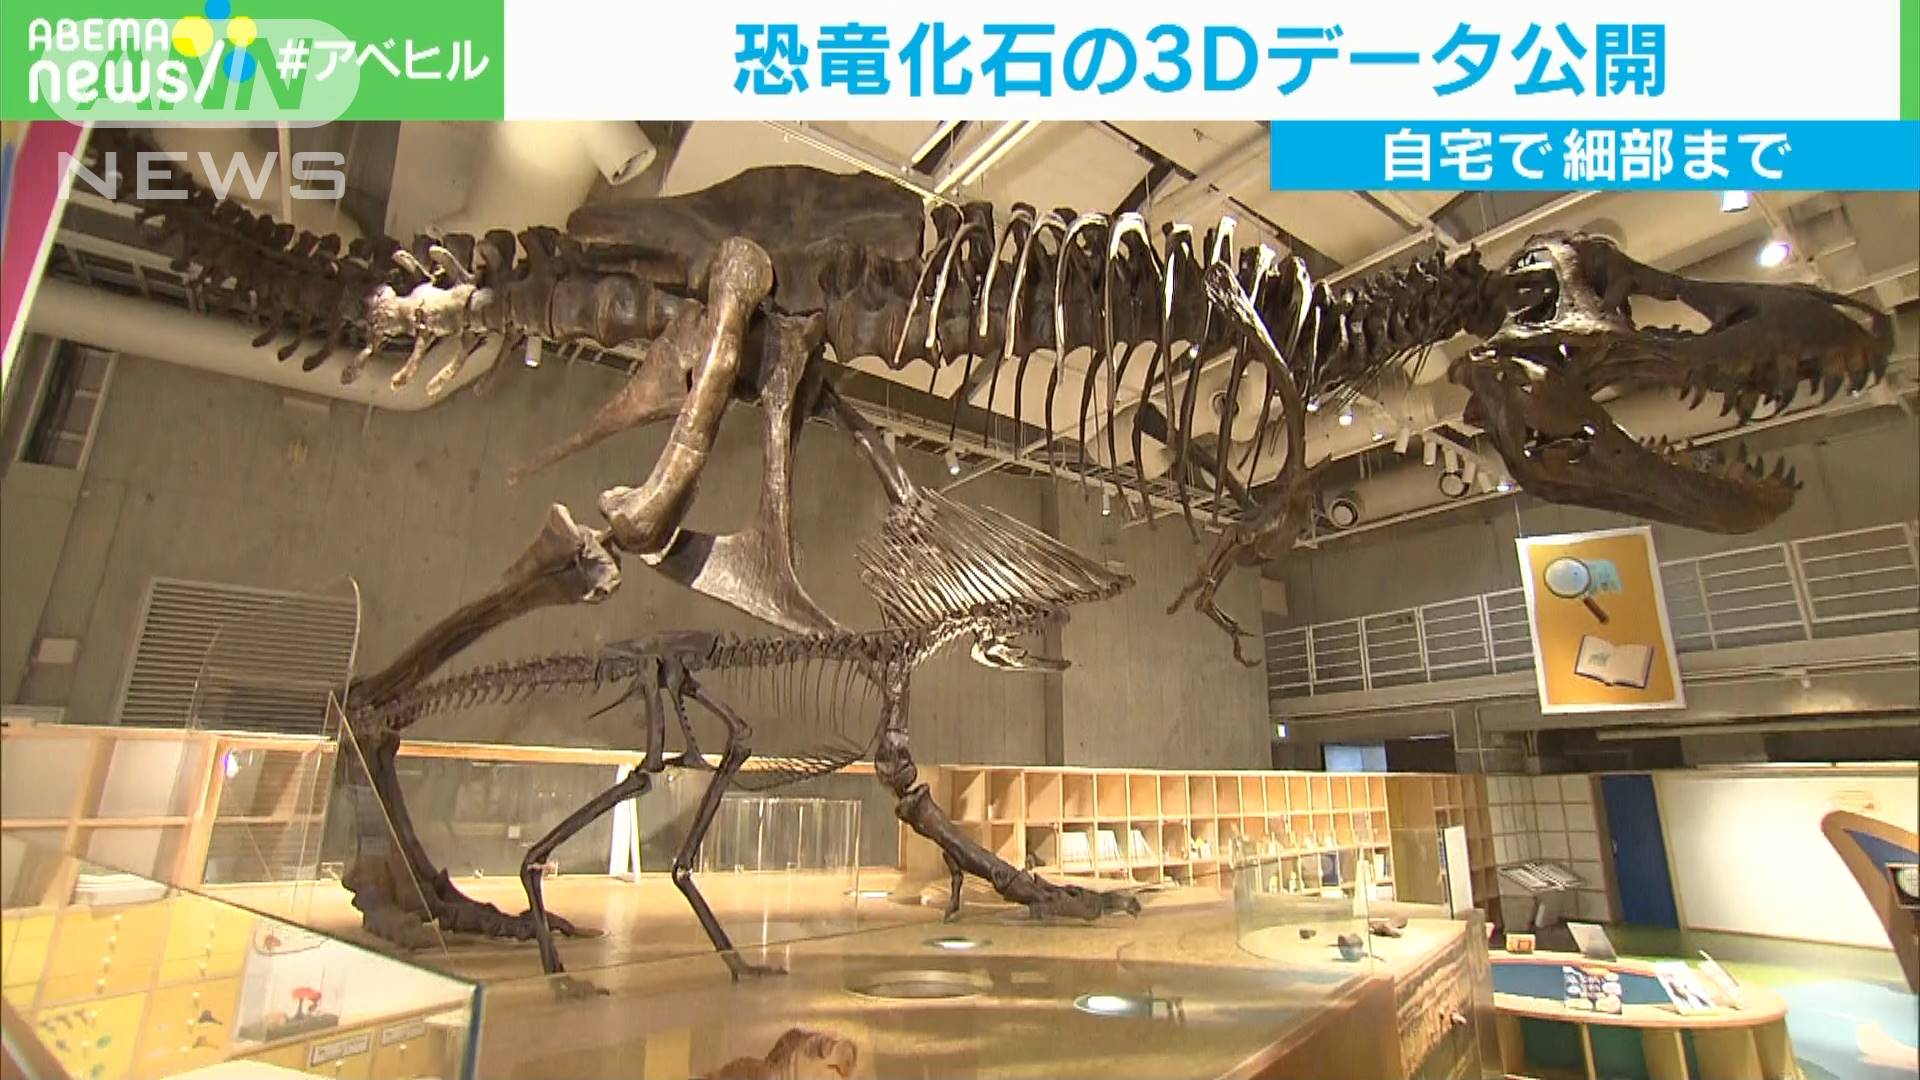 恐竜の化石をこんな角度からも 3dデータを公開 テレ朝news テレビ朝日のニュースサイト